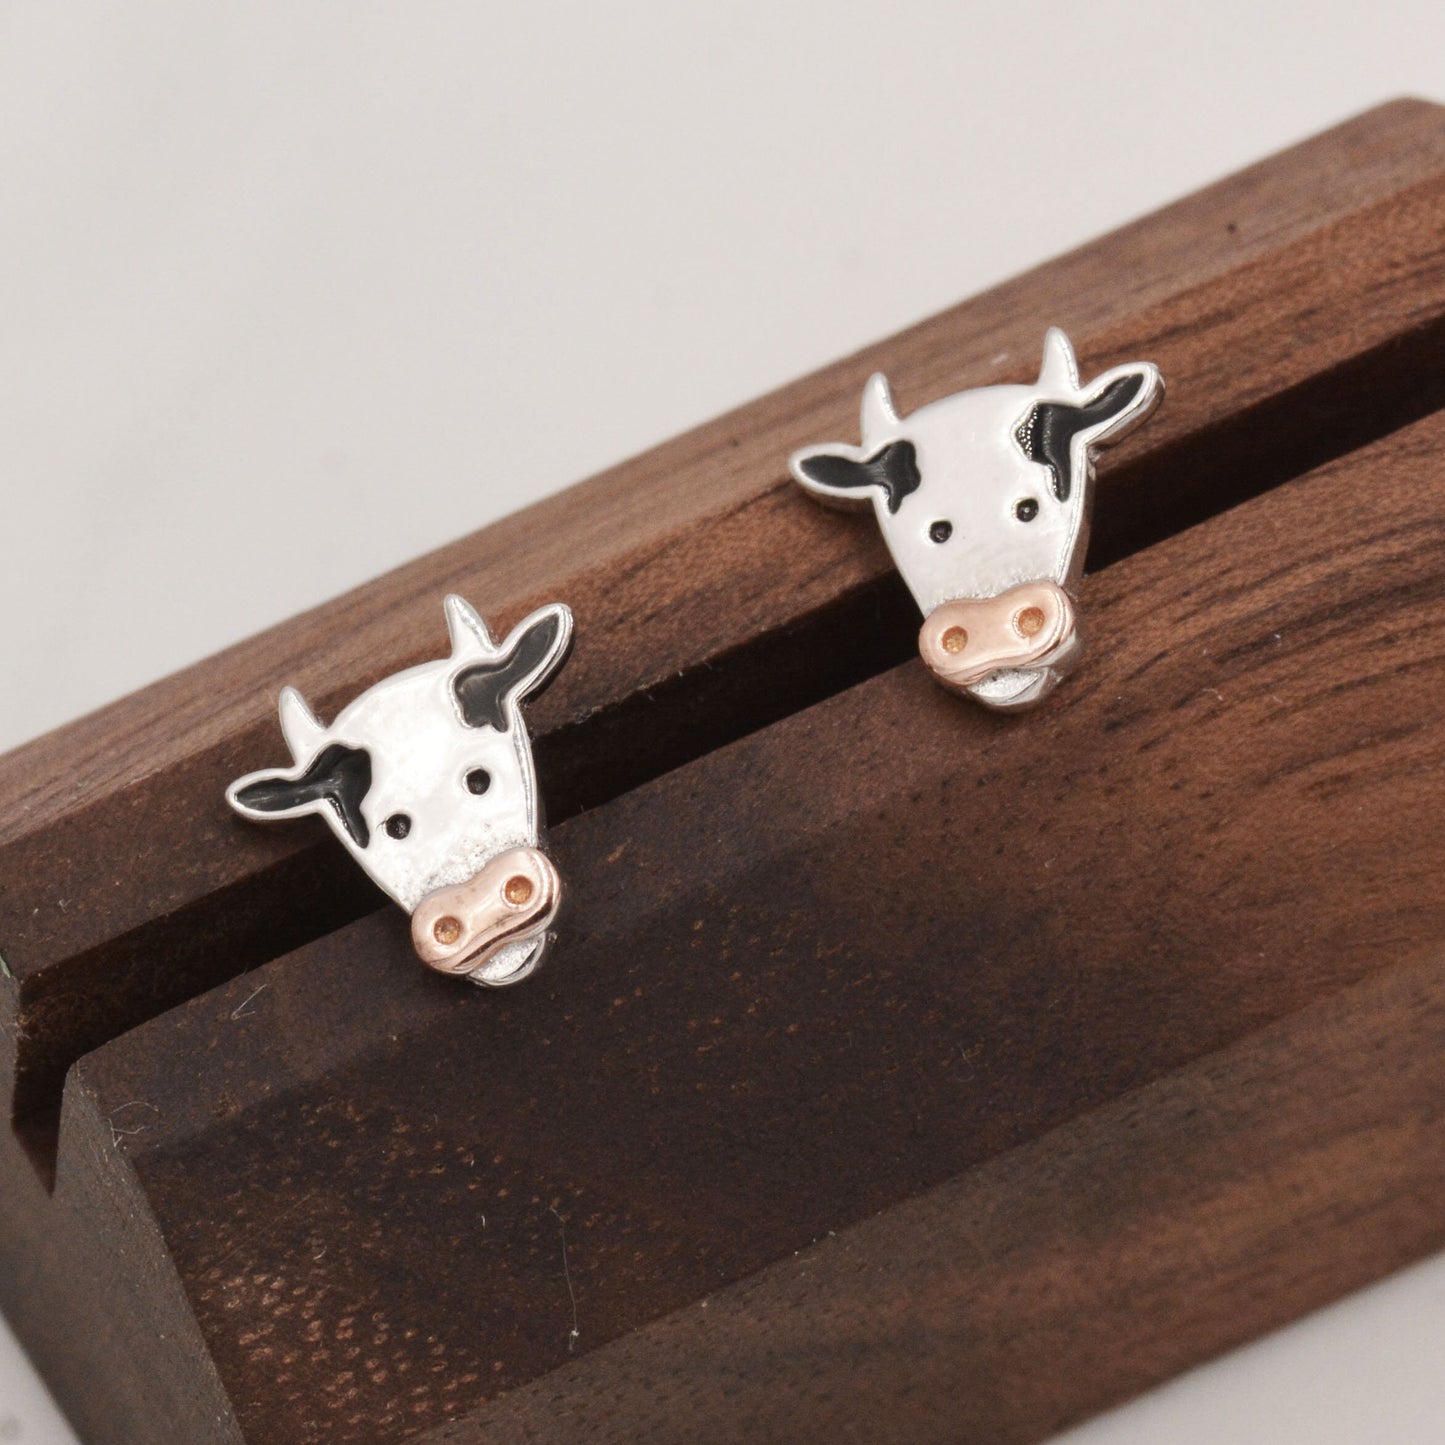 Dairy Cow Stud Earrings in Sterling Silver - Farm Animal Stud Earrings  - Cute,  Fun, Whimsical